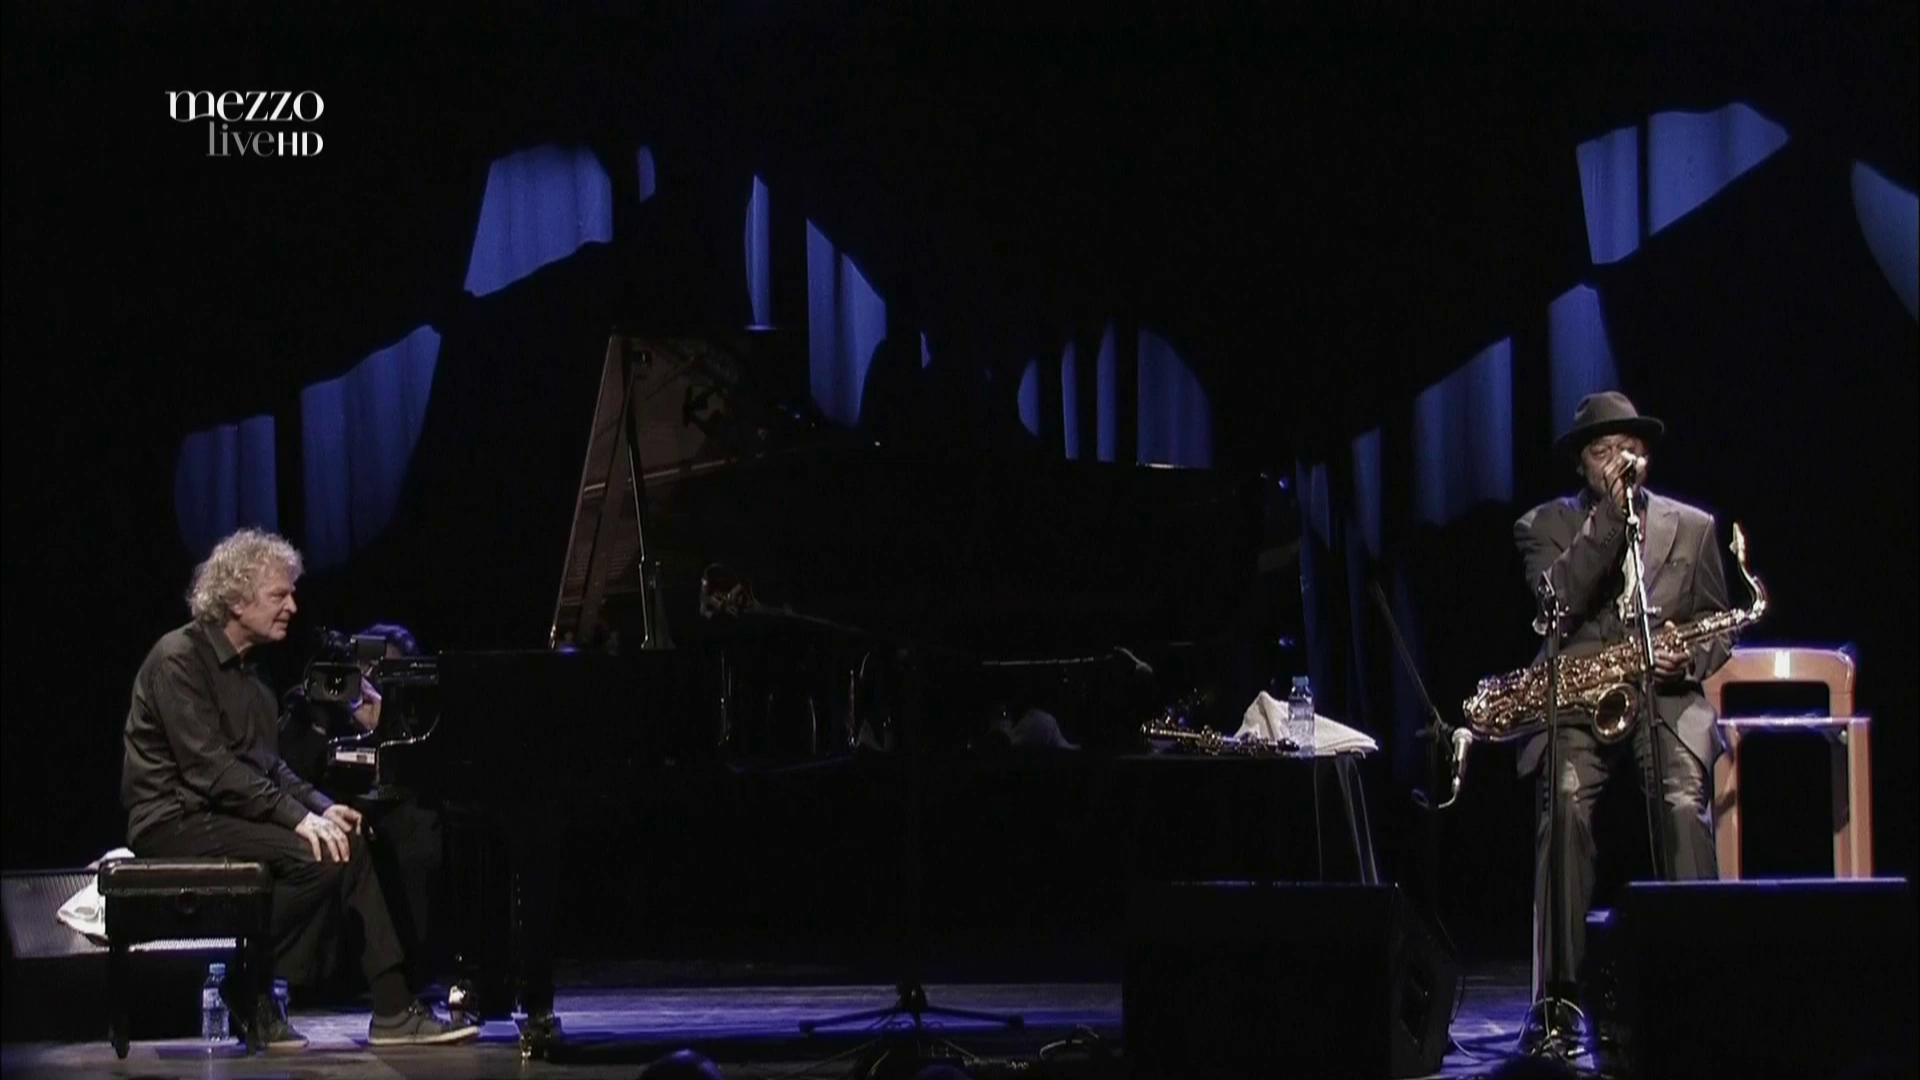 2011 Archie Shepp & Joachim Kuhn - Live at Jazzdor Festival [HDTV 1080p] 7